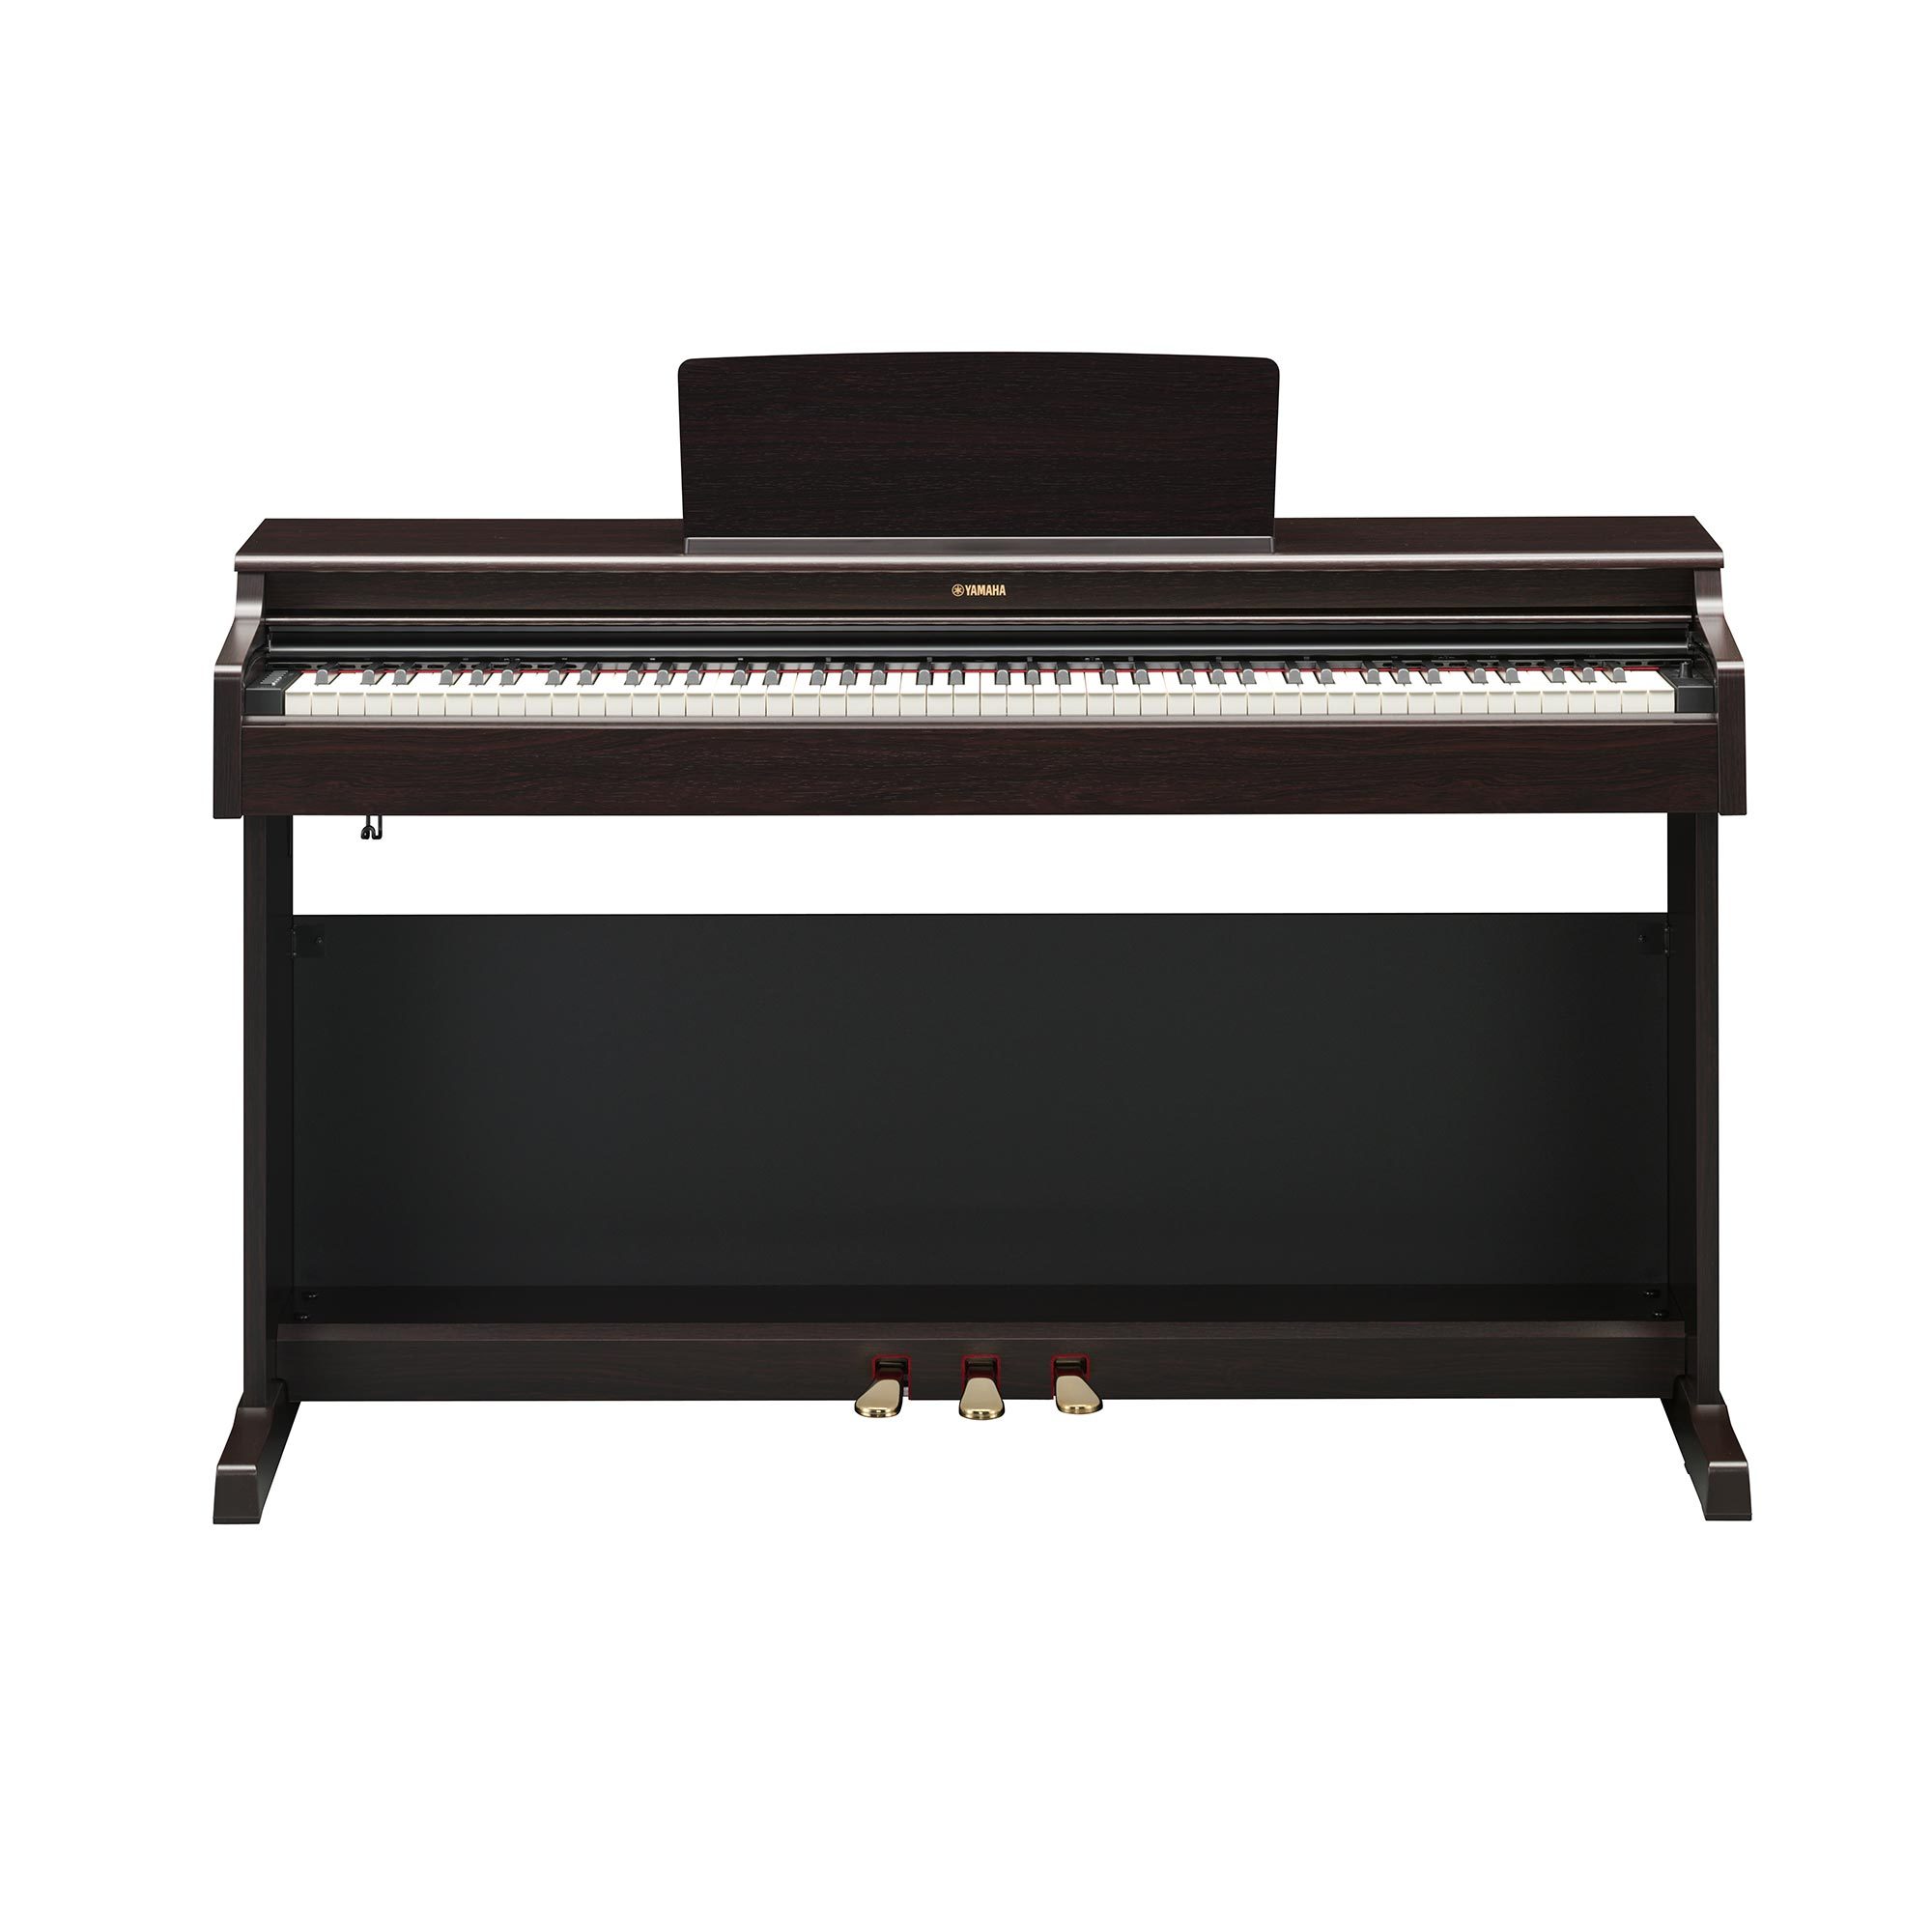 Yamaha YDP-165R цифровое фортепиано, цвет палисандр. В комплекте оригинальная банкетка Yamaha